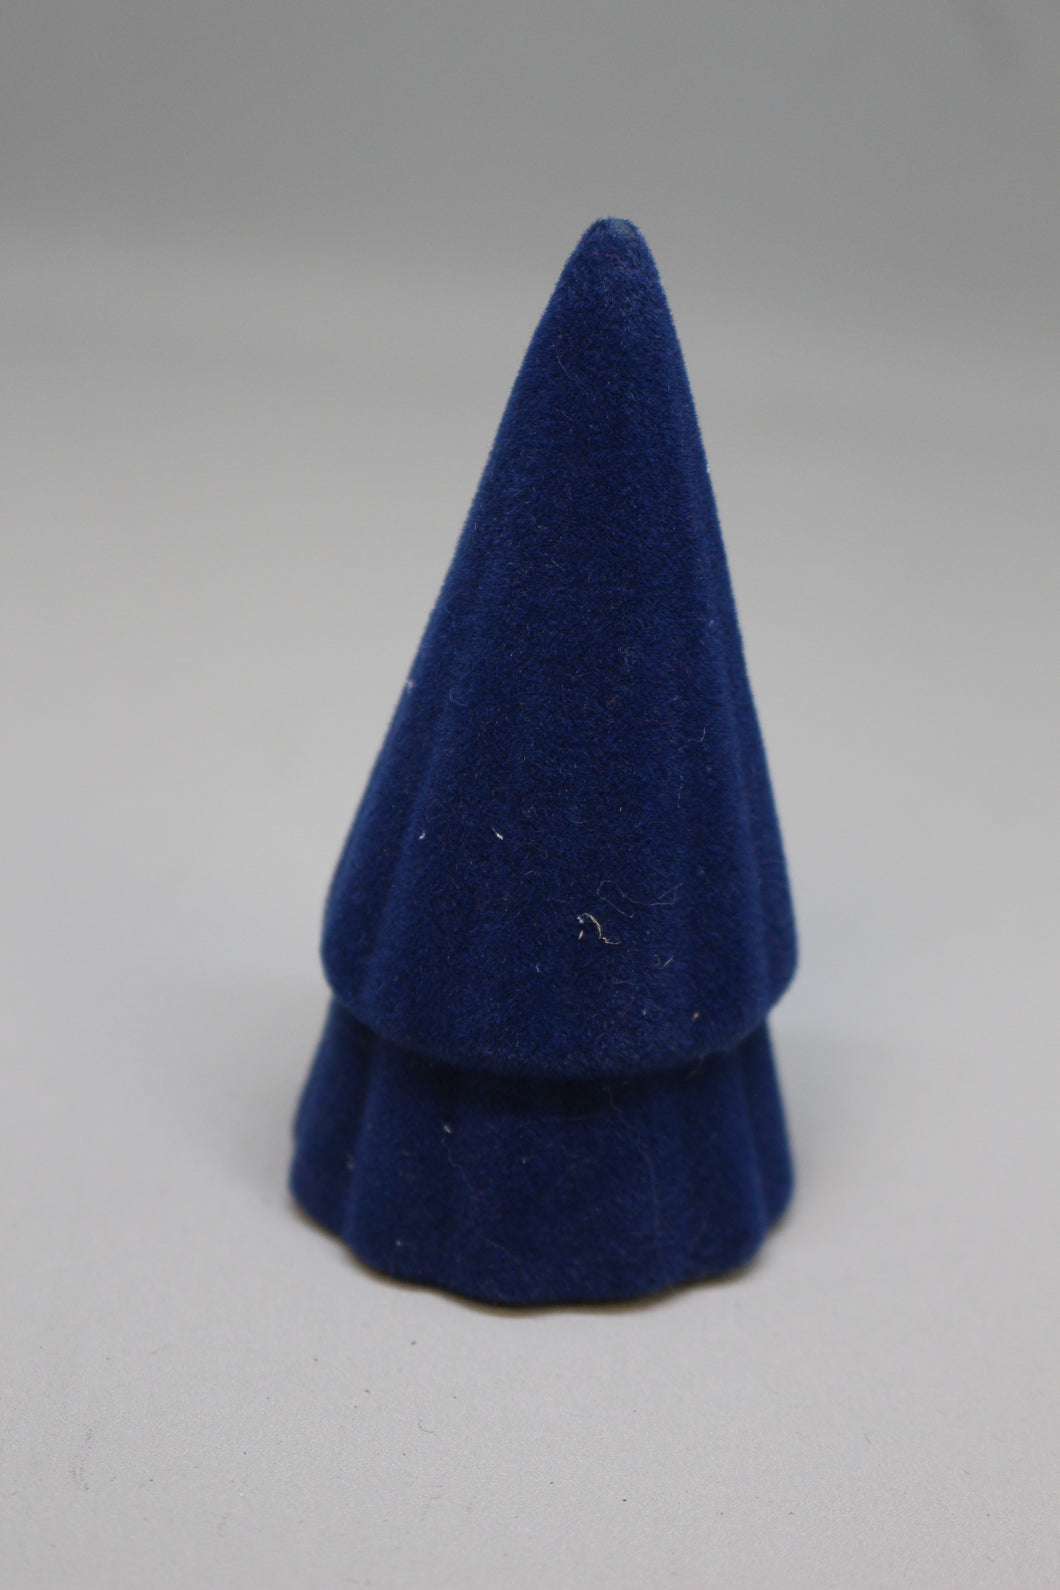 Mini Ceramic Flocked Cone Tree Decoration 3 1/2